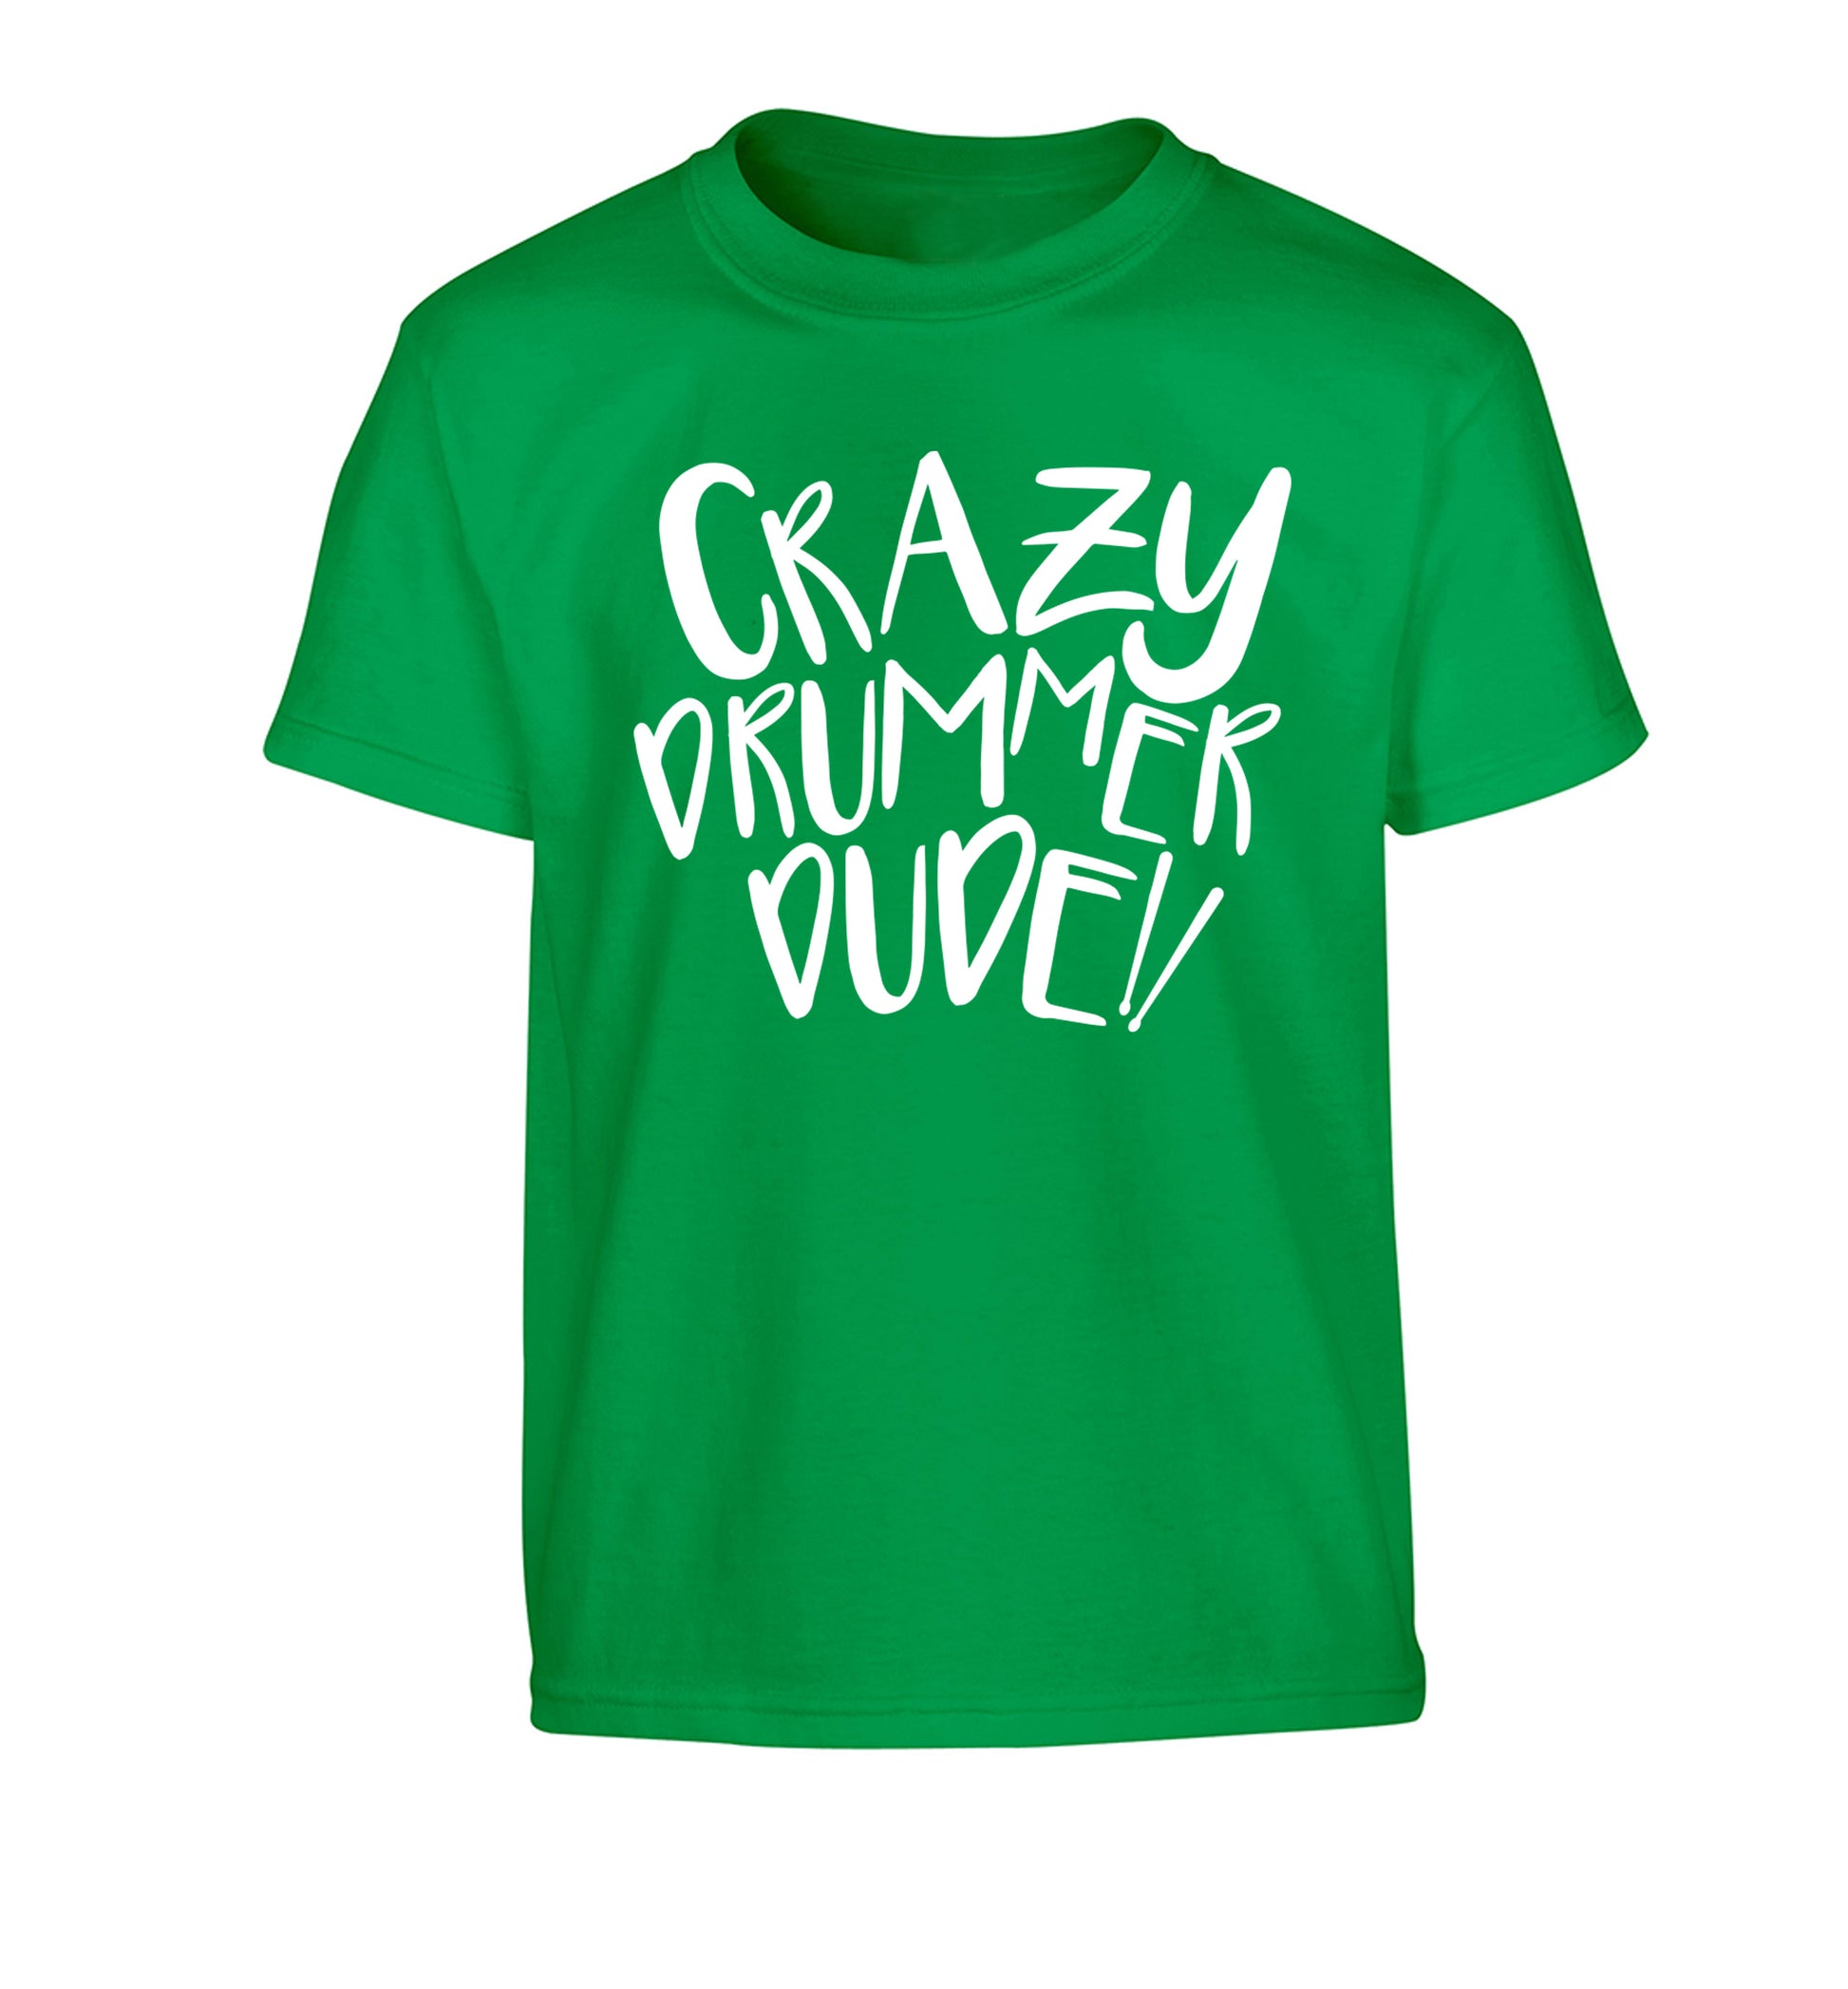 Crazy drummer dude Children's green Tshirt 12-14 Years